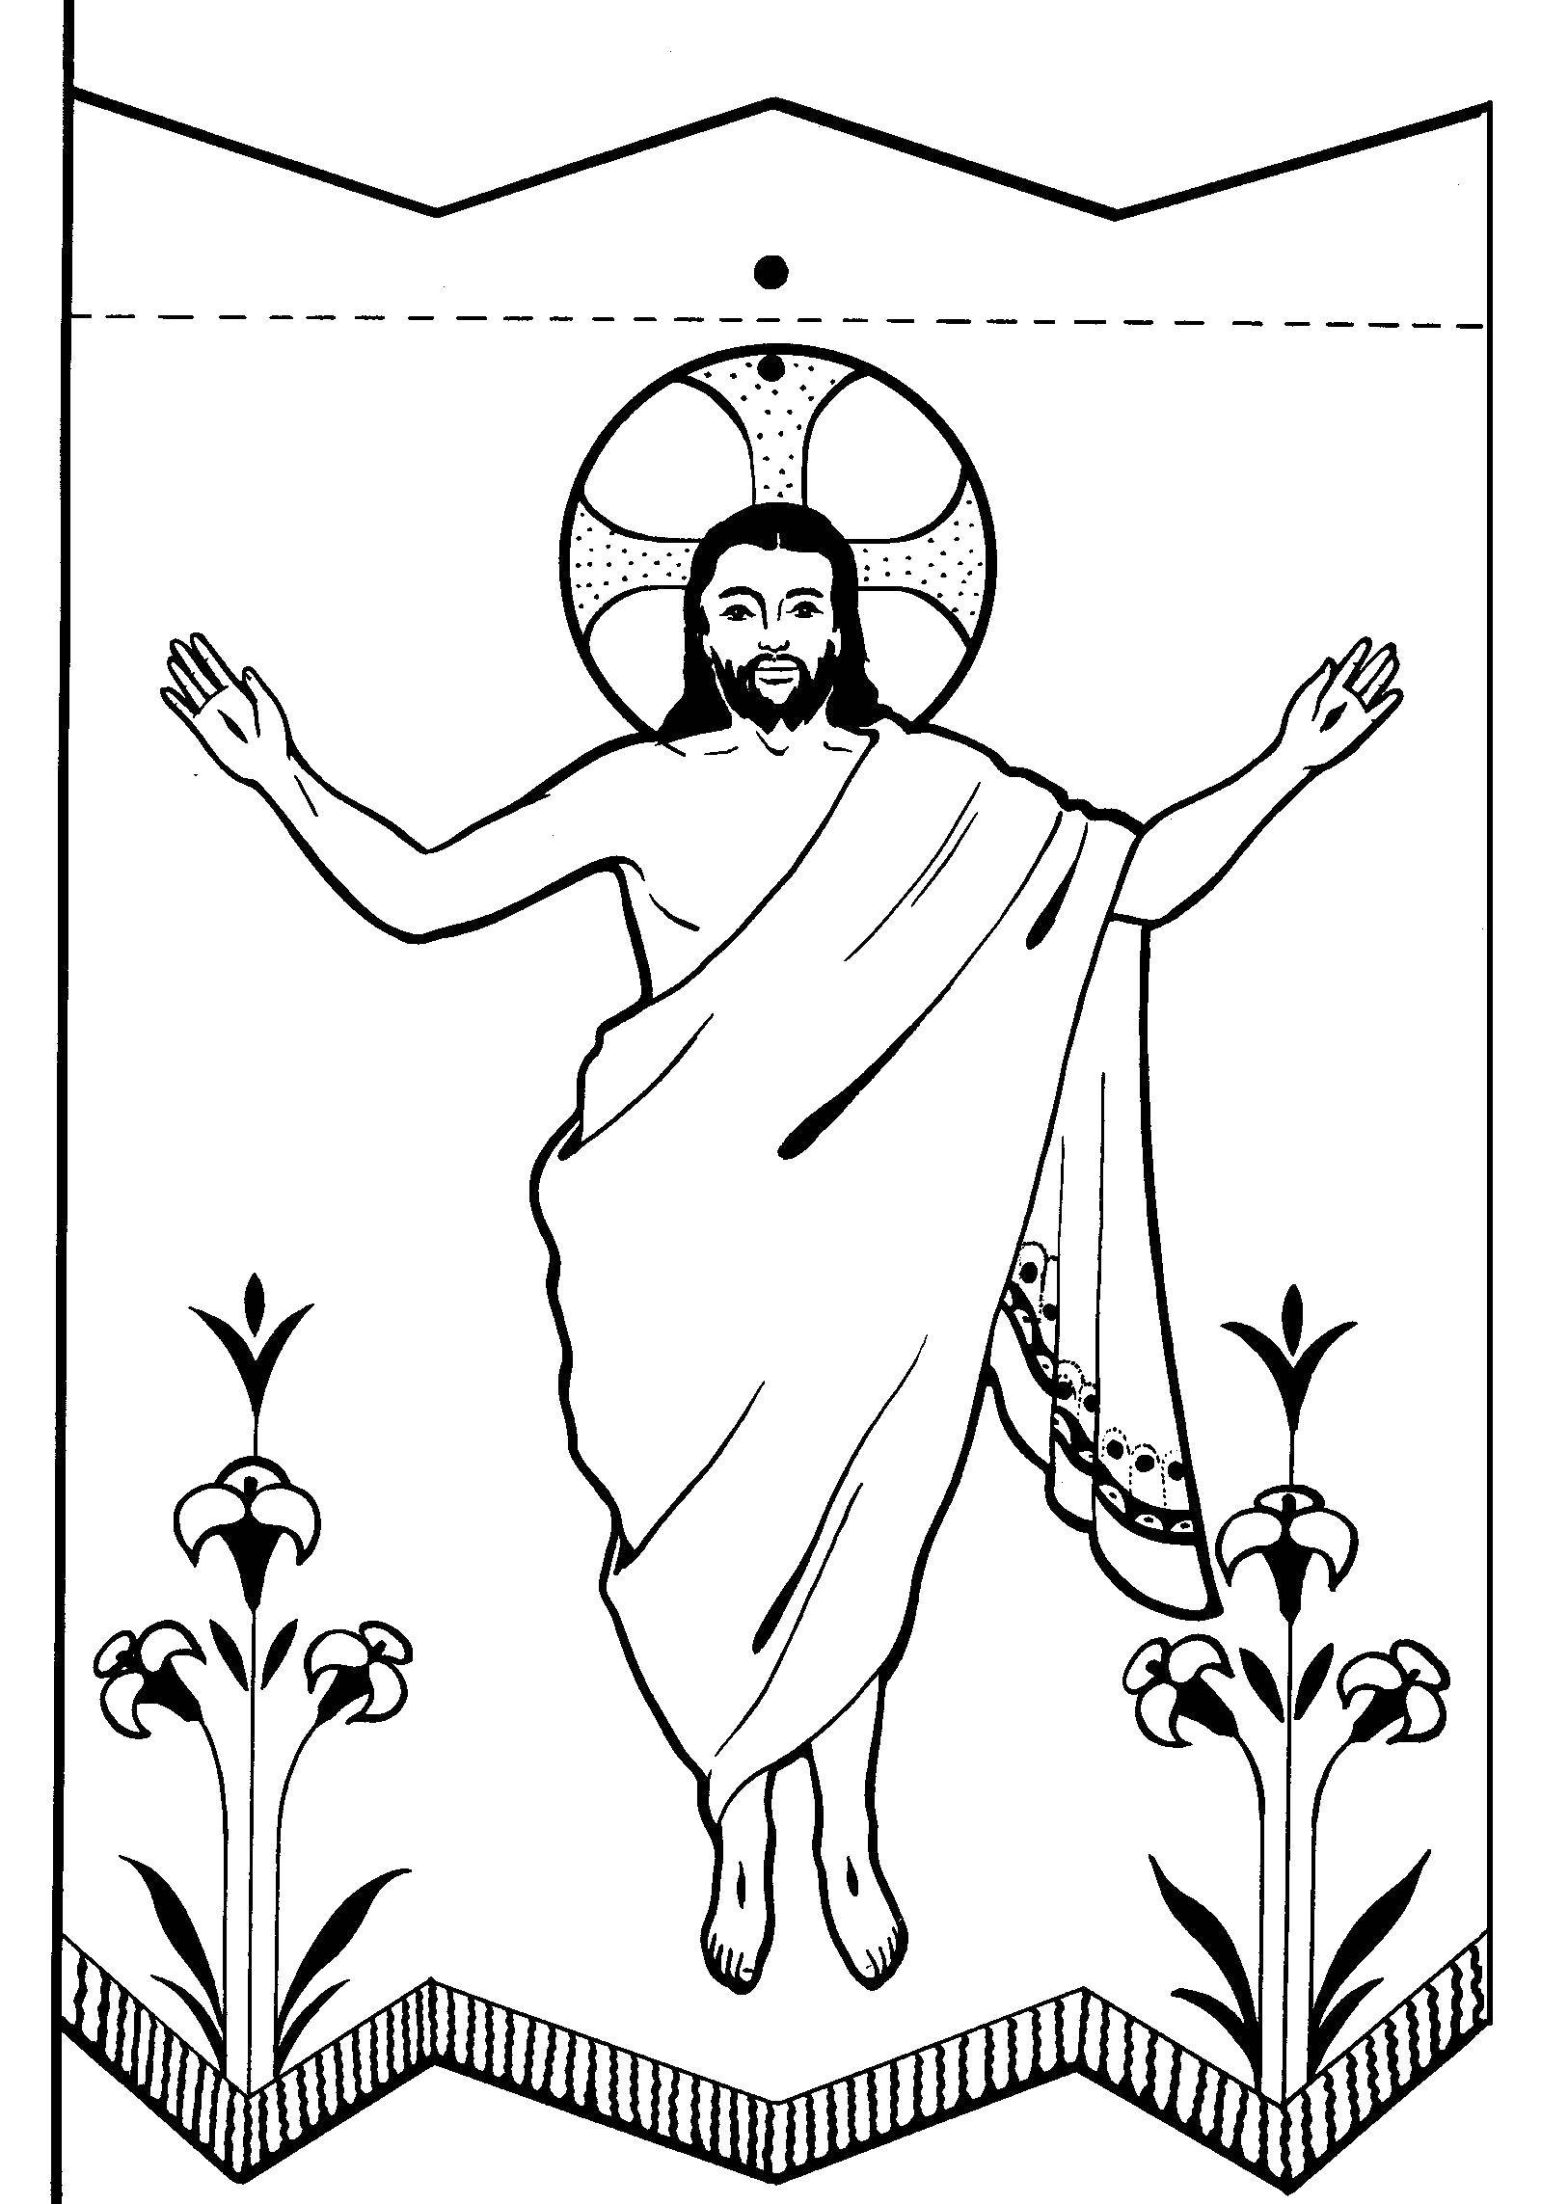 Раскраска изображения религиозного символа для малышей (изображения)